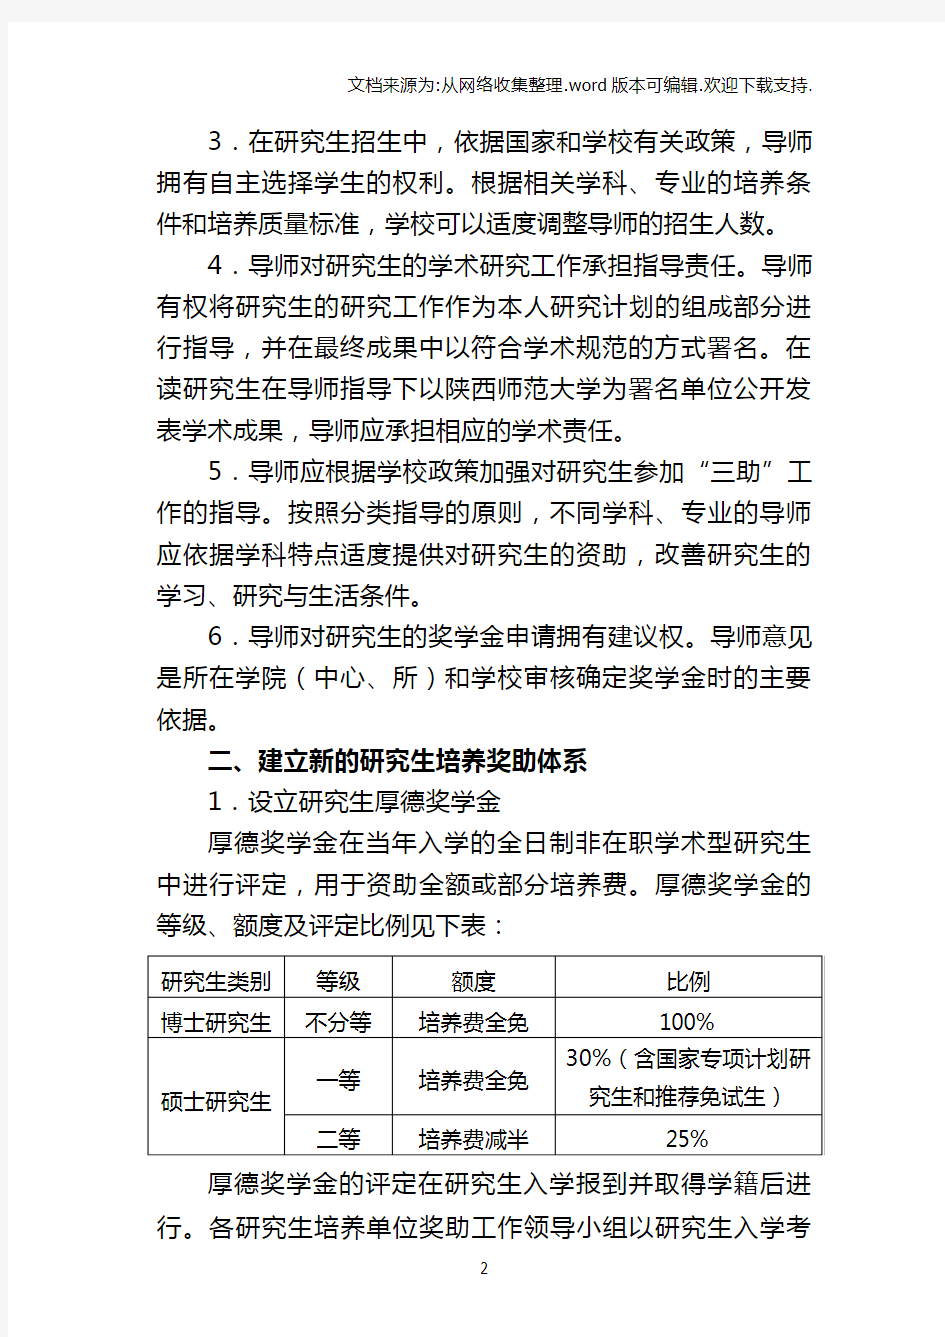 陕西师范大学研究生培养机制改革实施方案(修订)